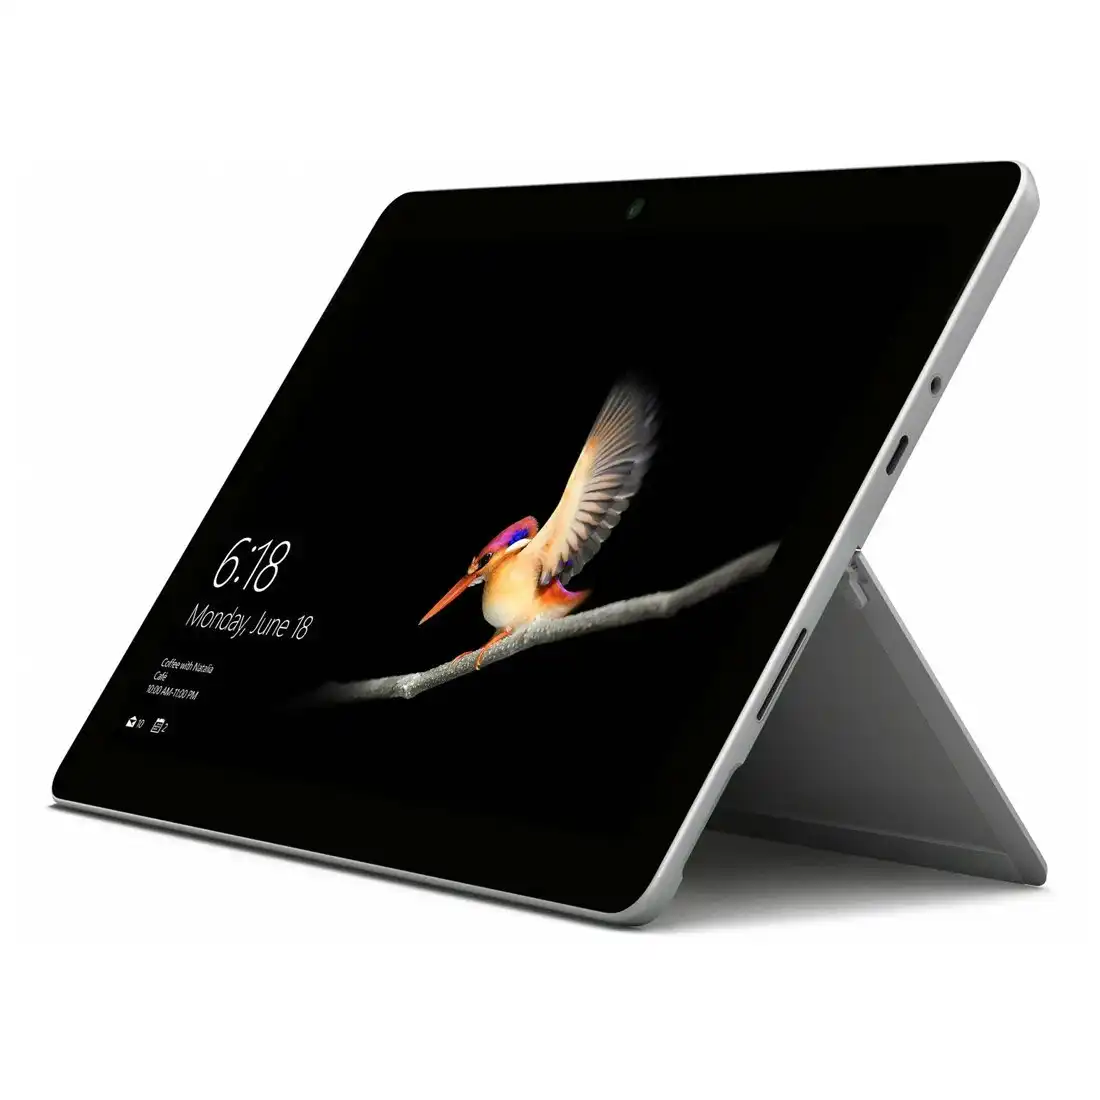 Microsoft Surface Laptop Go (10.5", Pentium Gold 4415Y, 64GB/4GB, LXK-00007) - Platinum